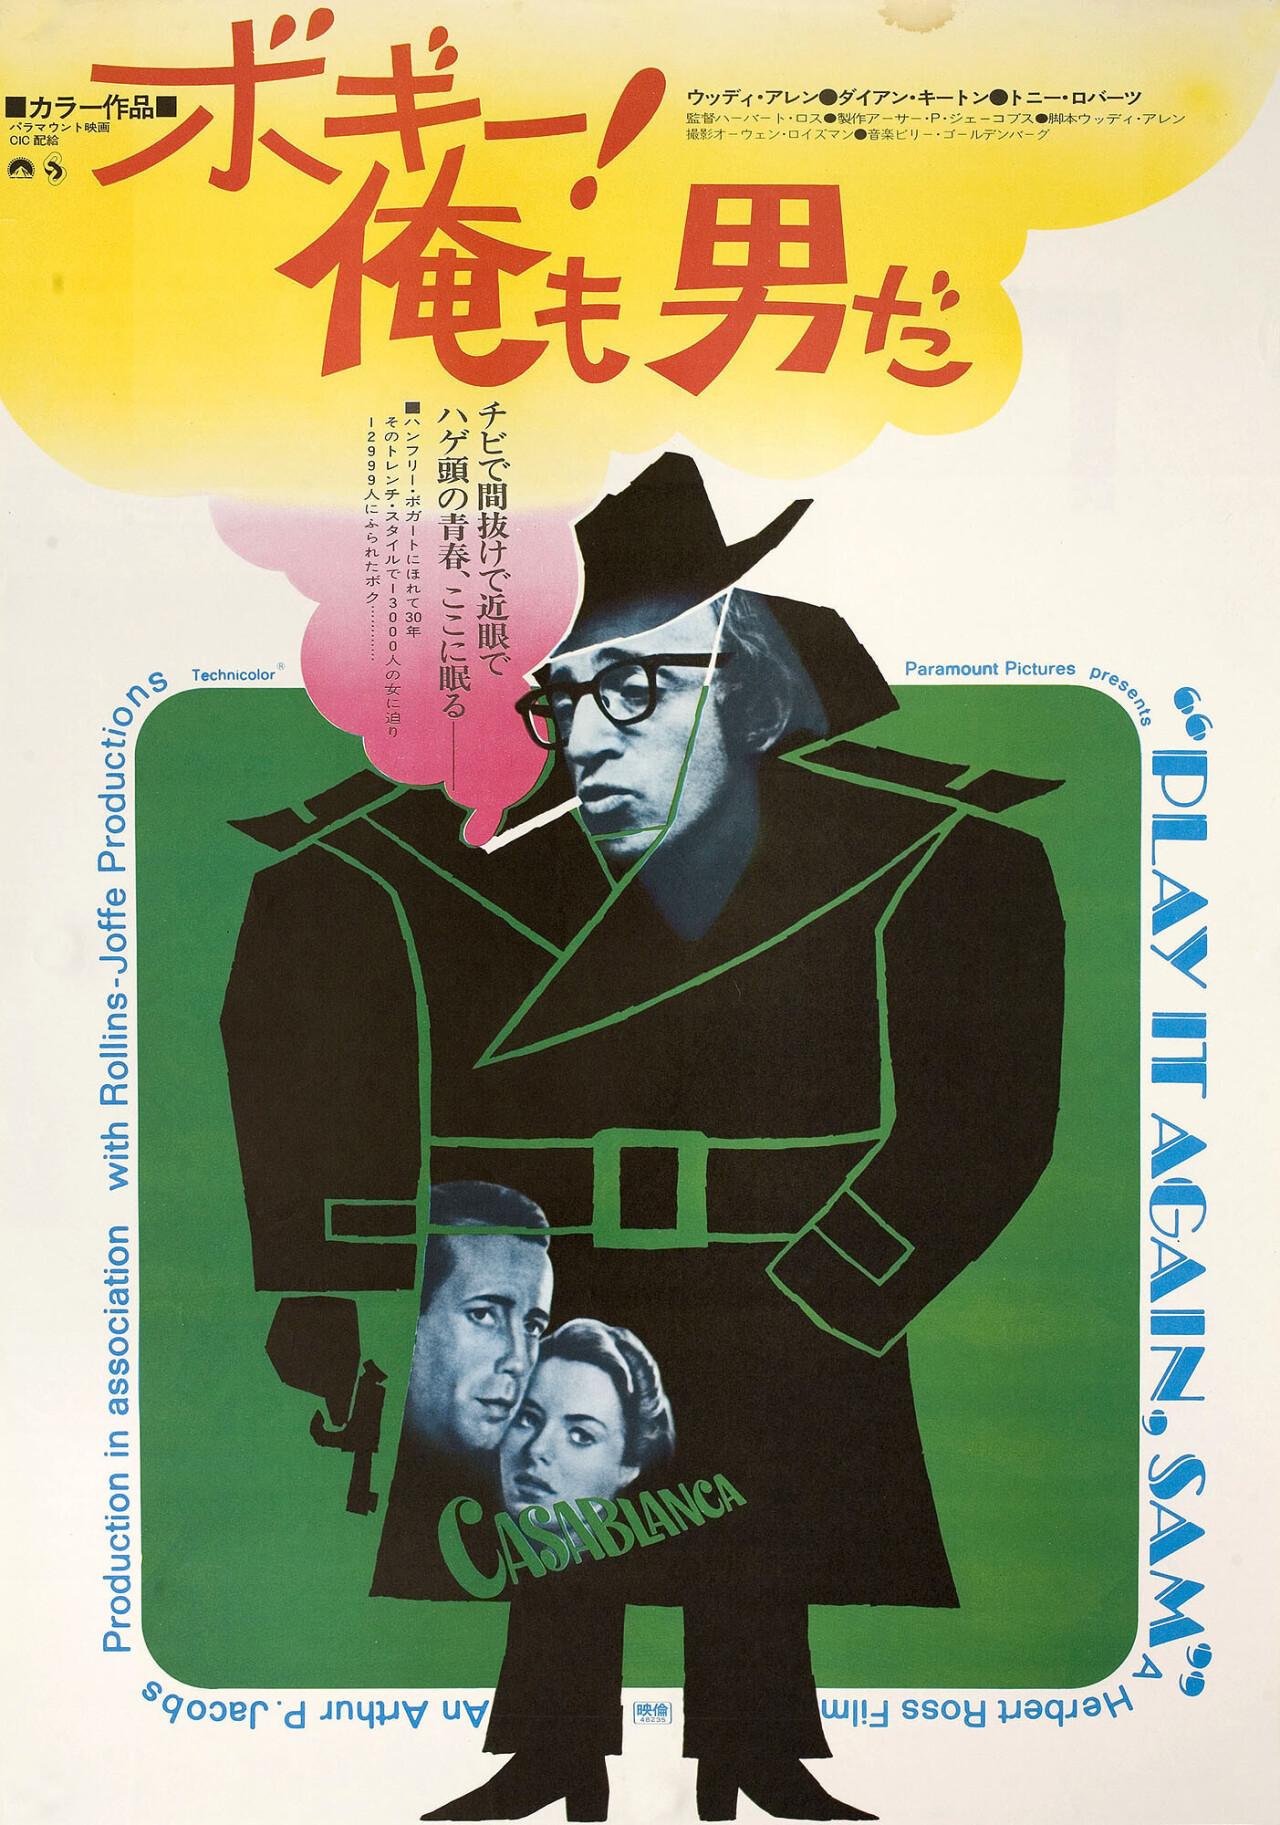 Сыграй это еще раз, Сэм! (Play It Again, Sam, 1972), режиссёр Герберт Росс, японский постер к фильму (графический дизайн, 1973 год)